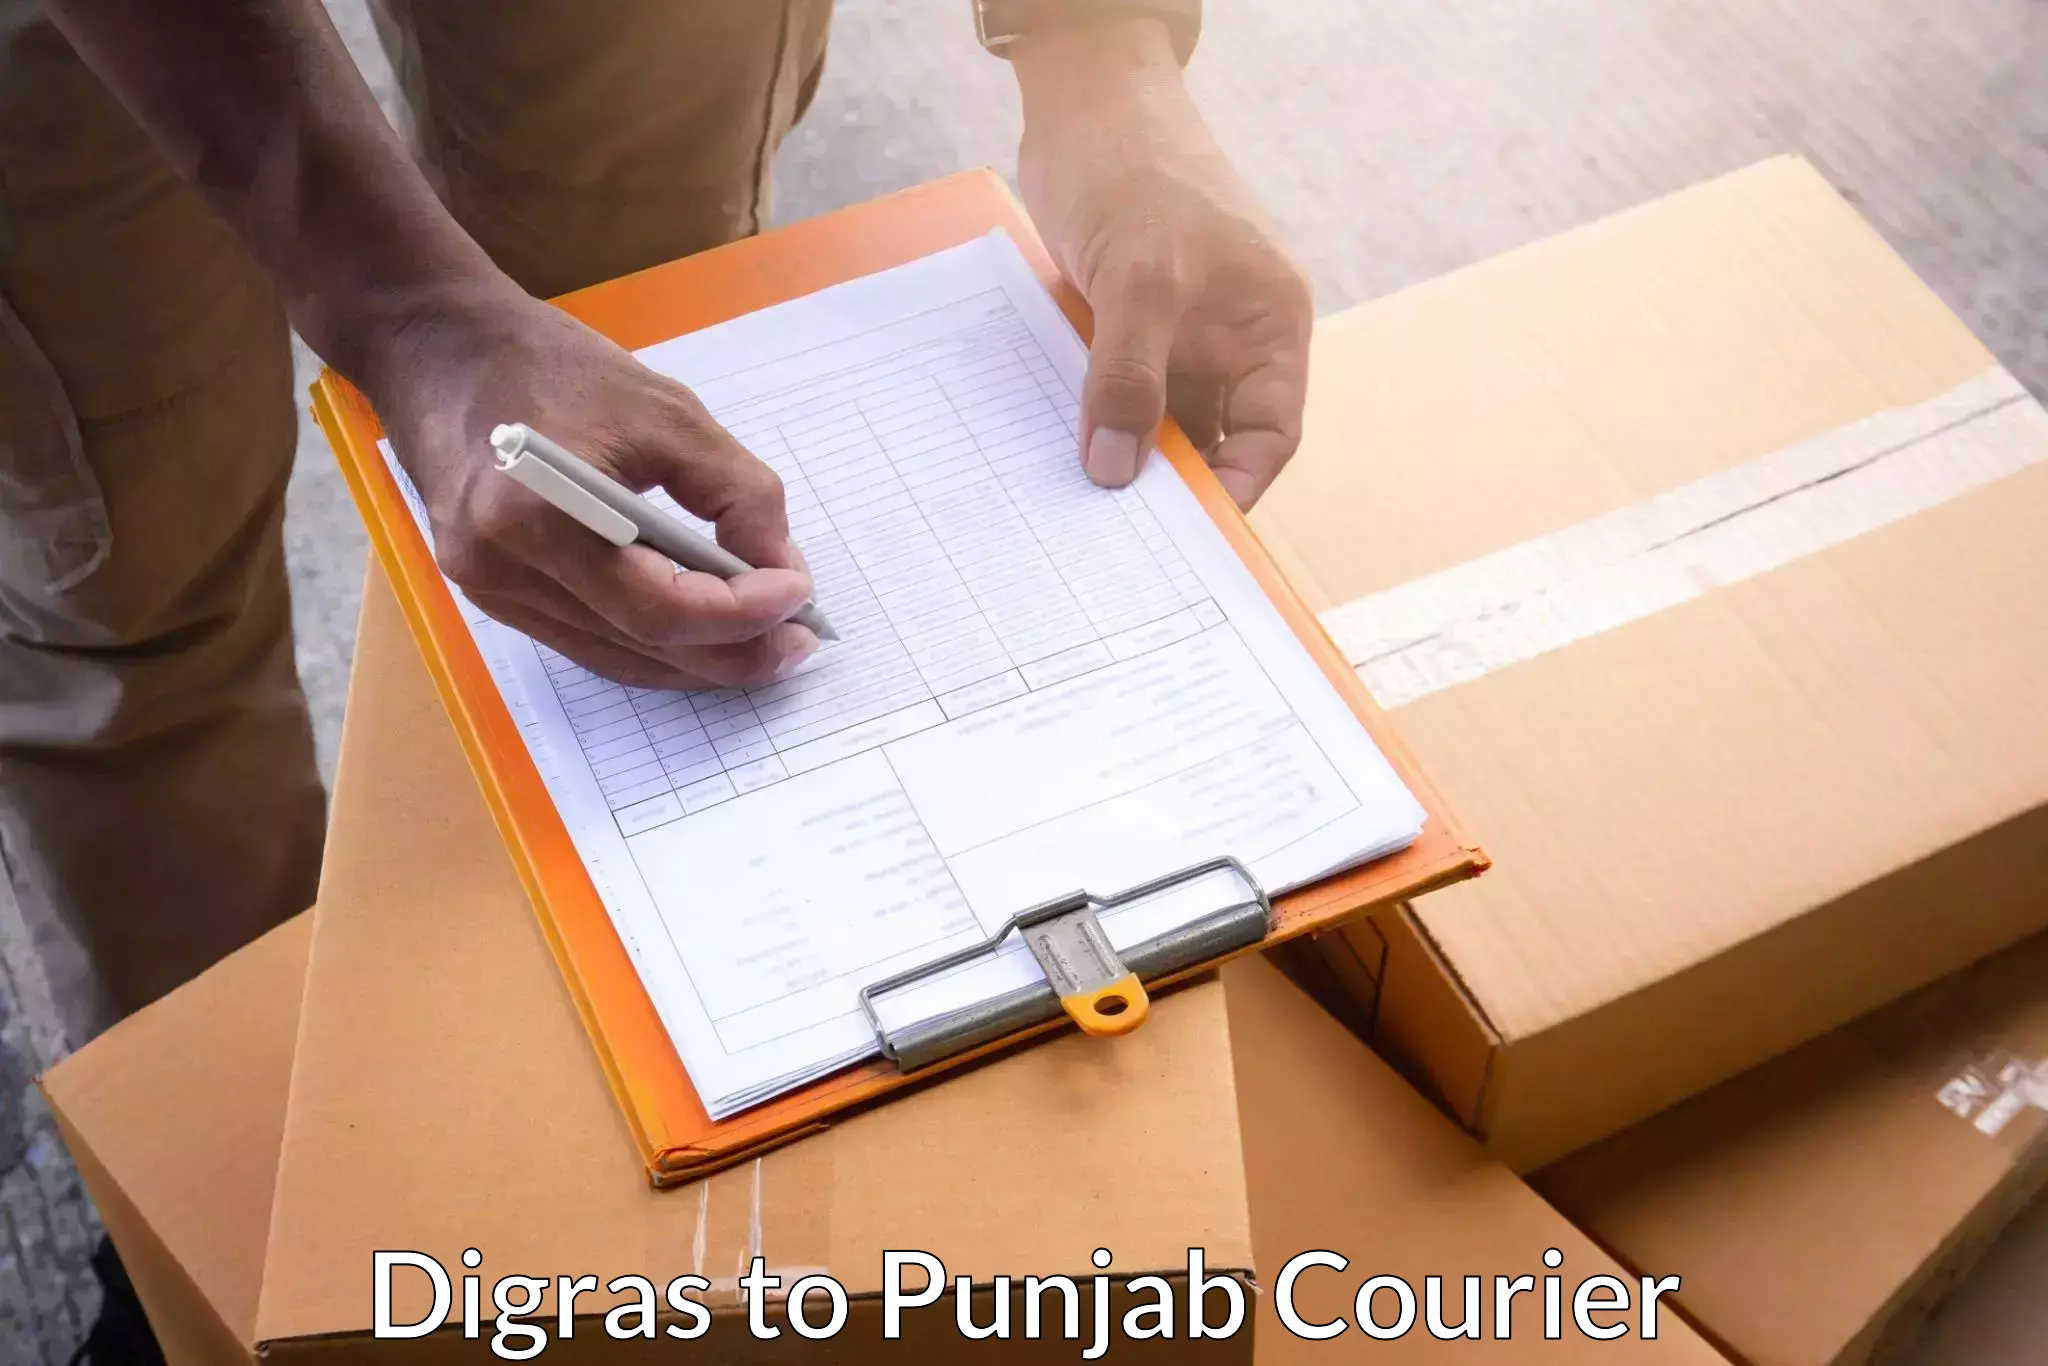 Efficient parcel service in Digras to Hoshiarpur